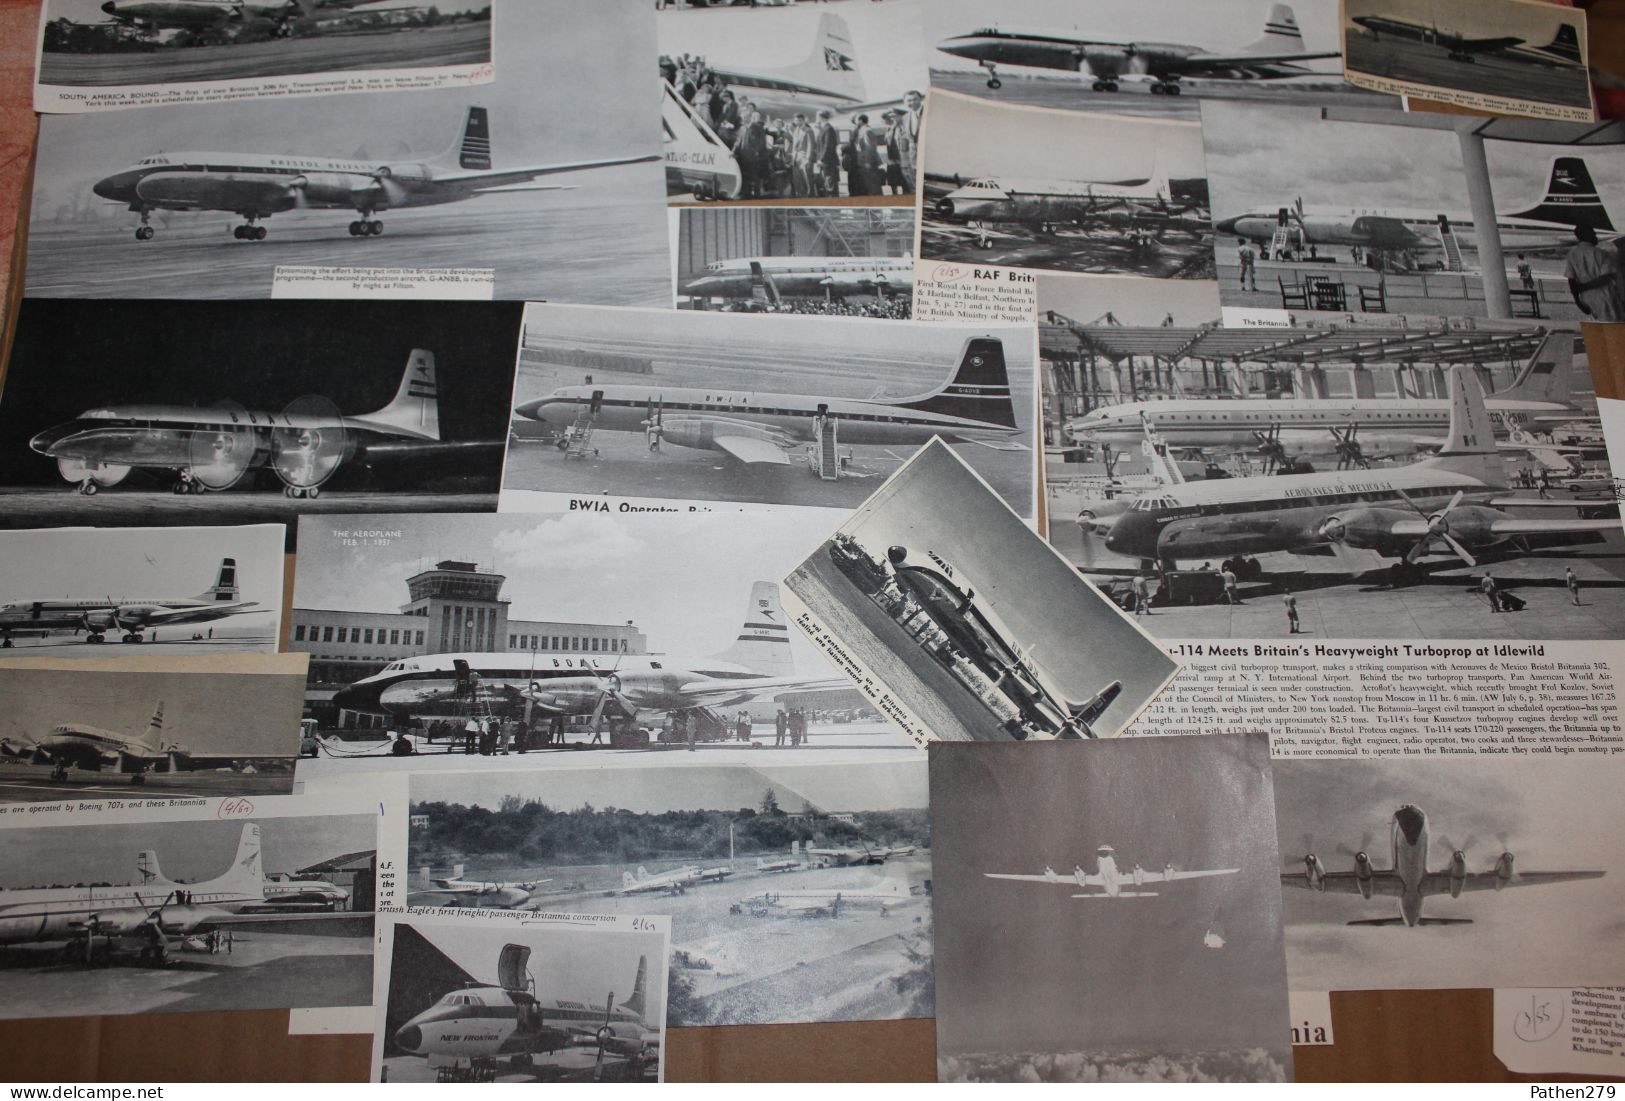 Lot de 354g d'anciennes coupures de presse et photos de l'aéronef britannique Bristol 175 Britannia